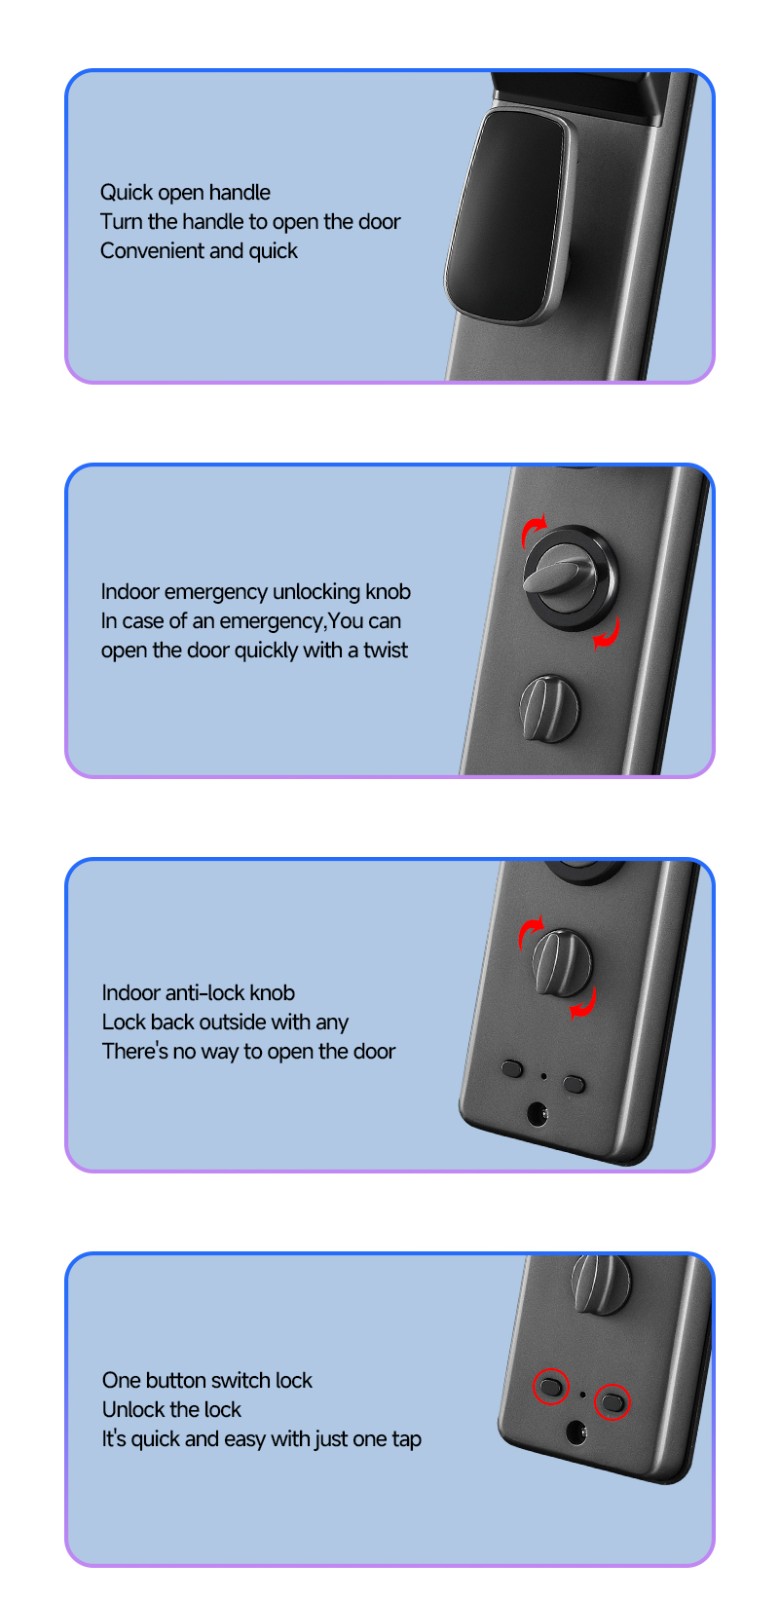 Digital lock knob